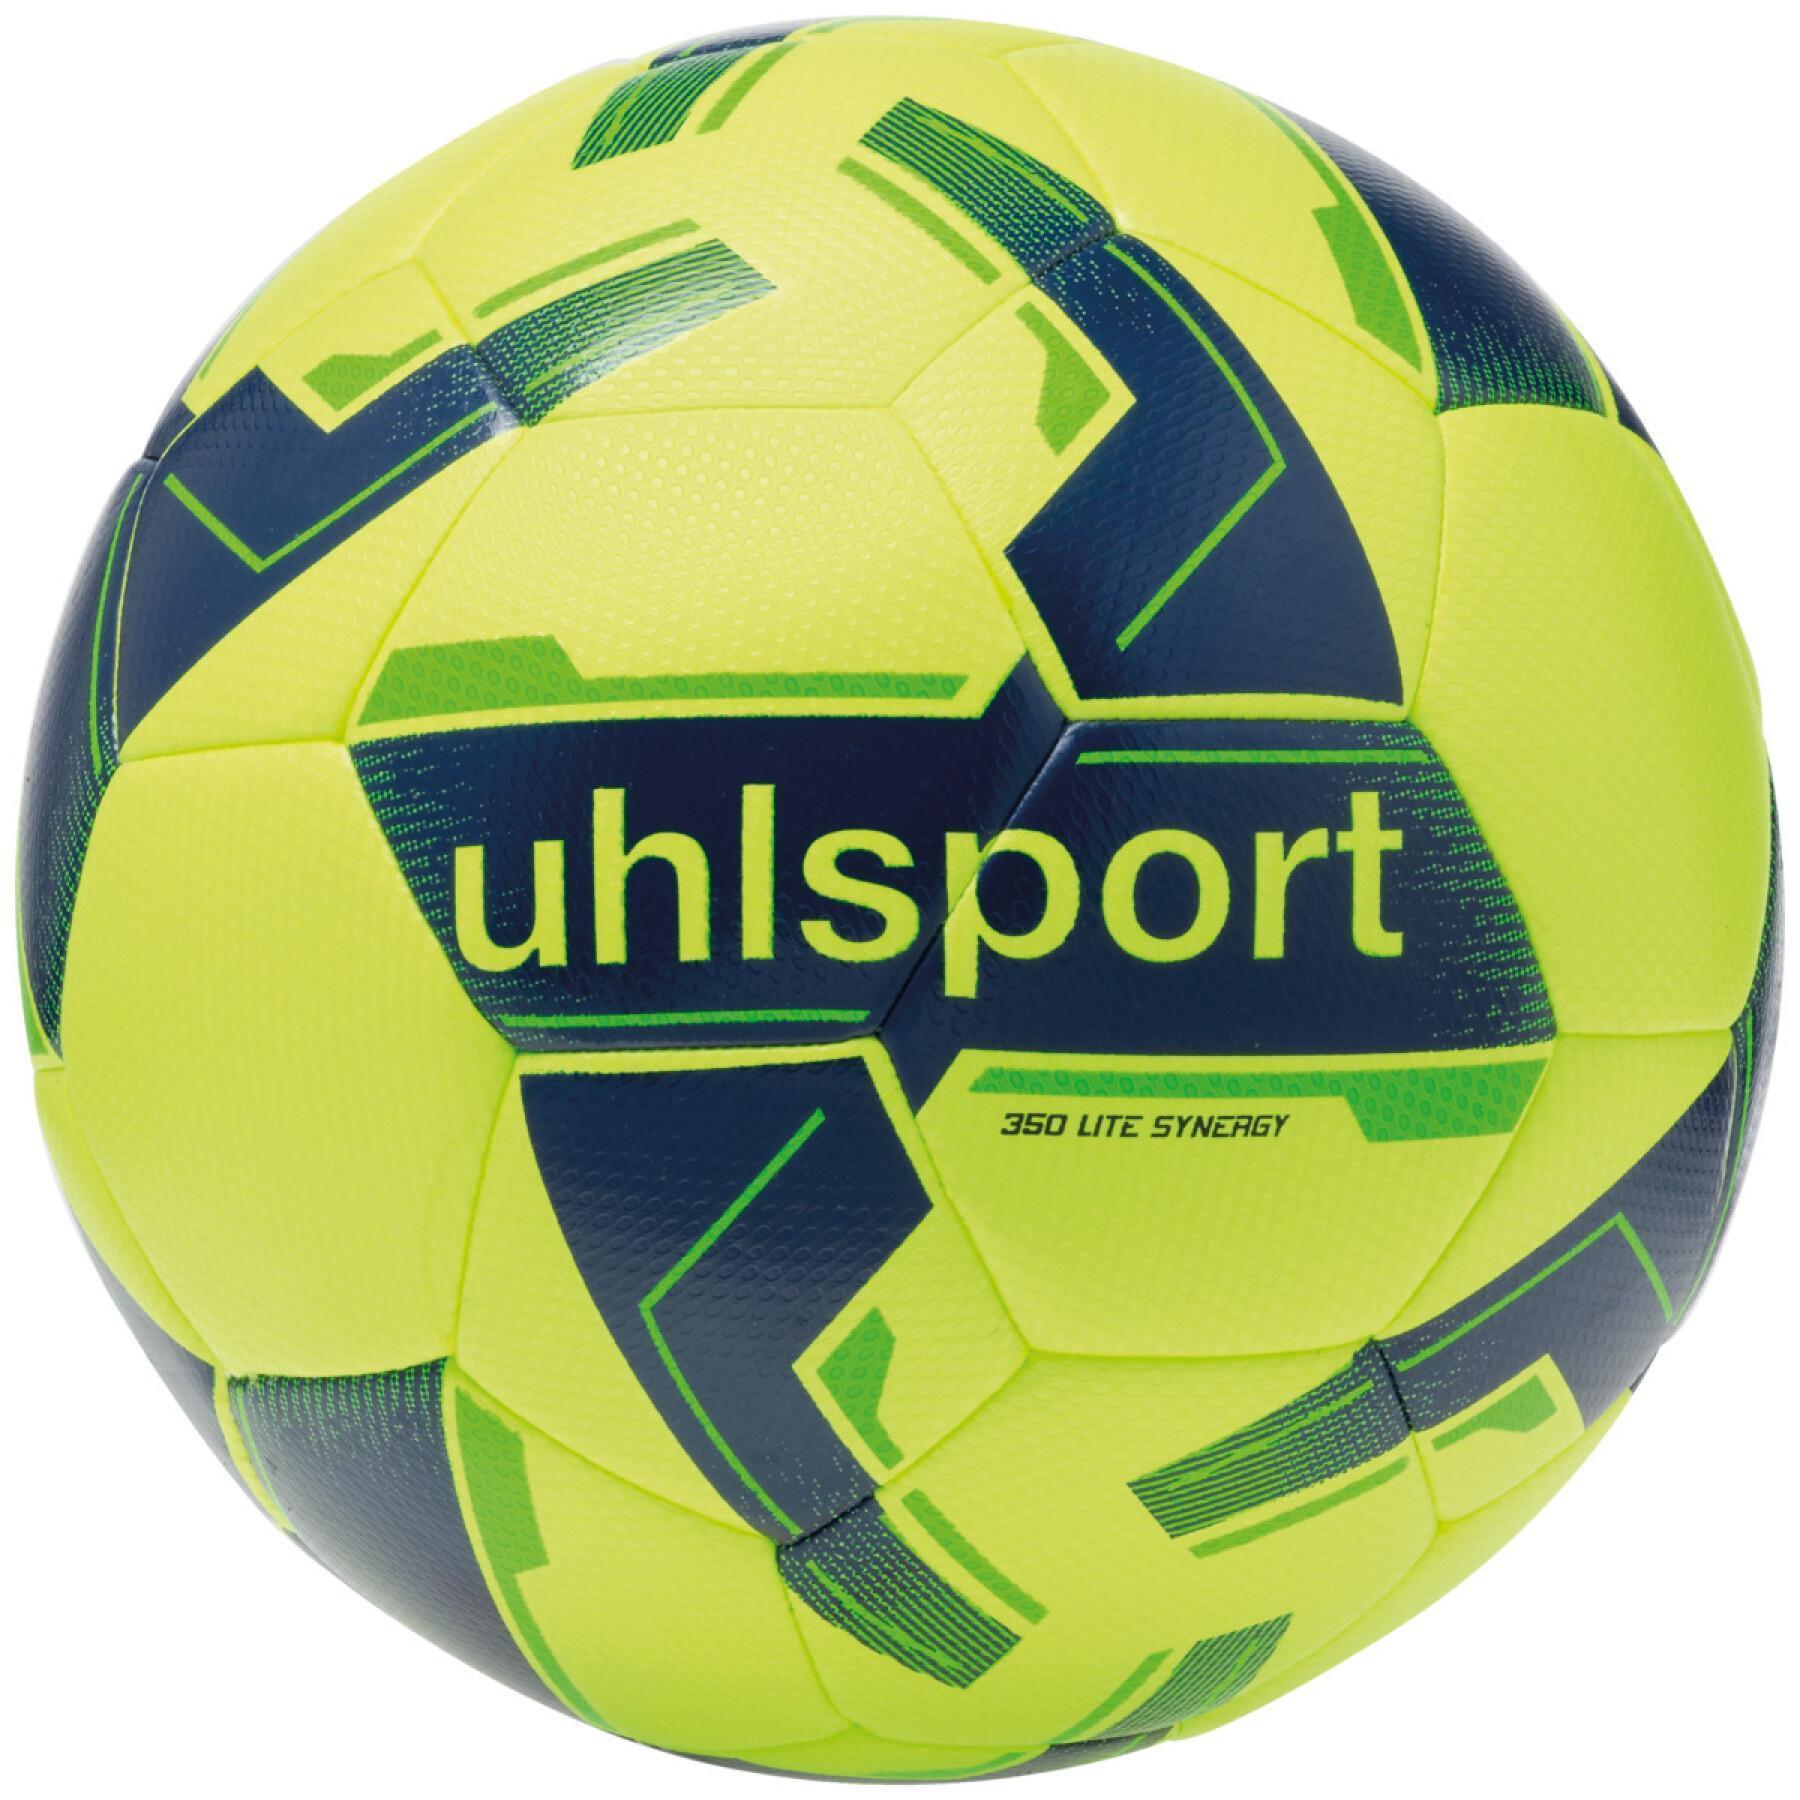 Football Children Uhlsport 350 Lite Synergy